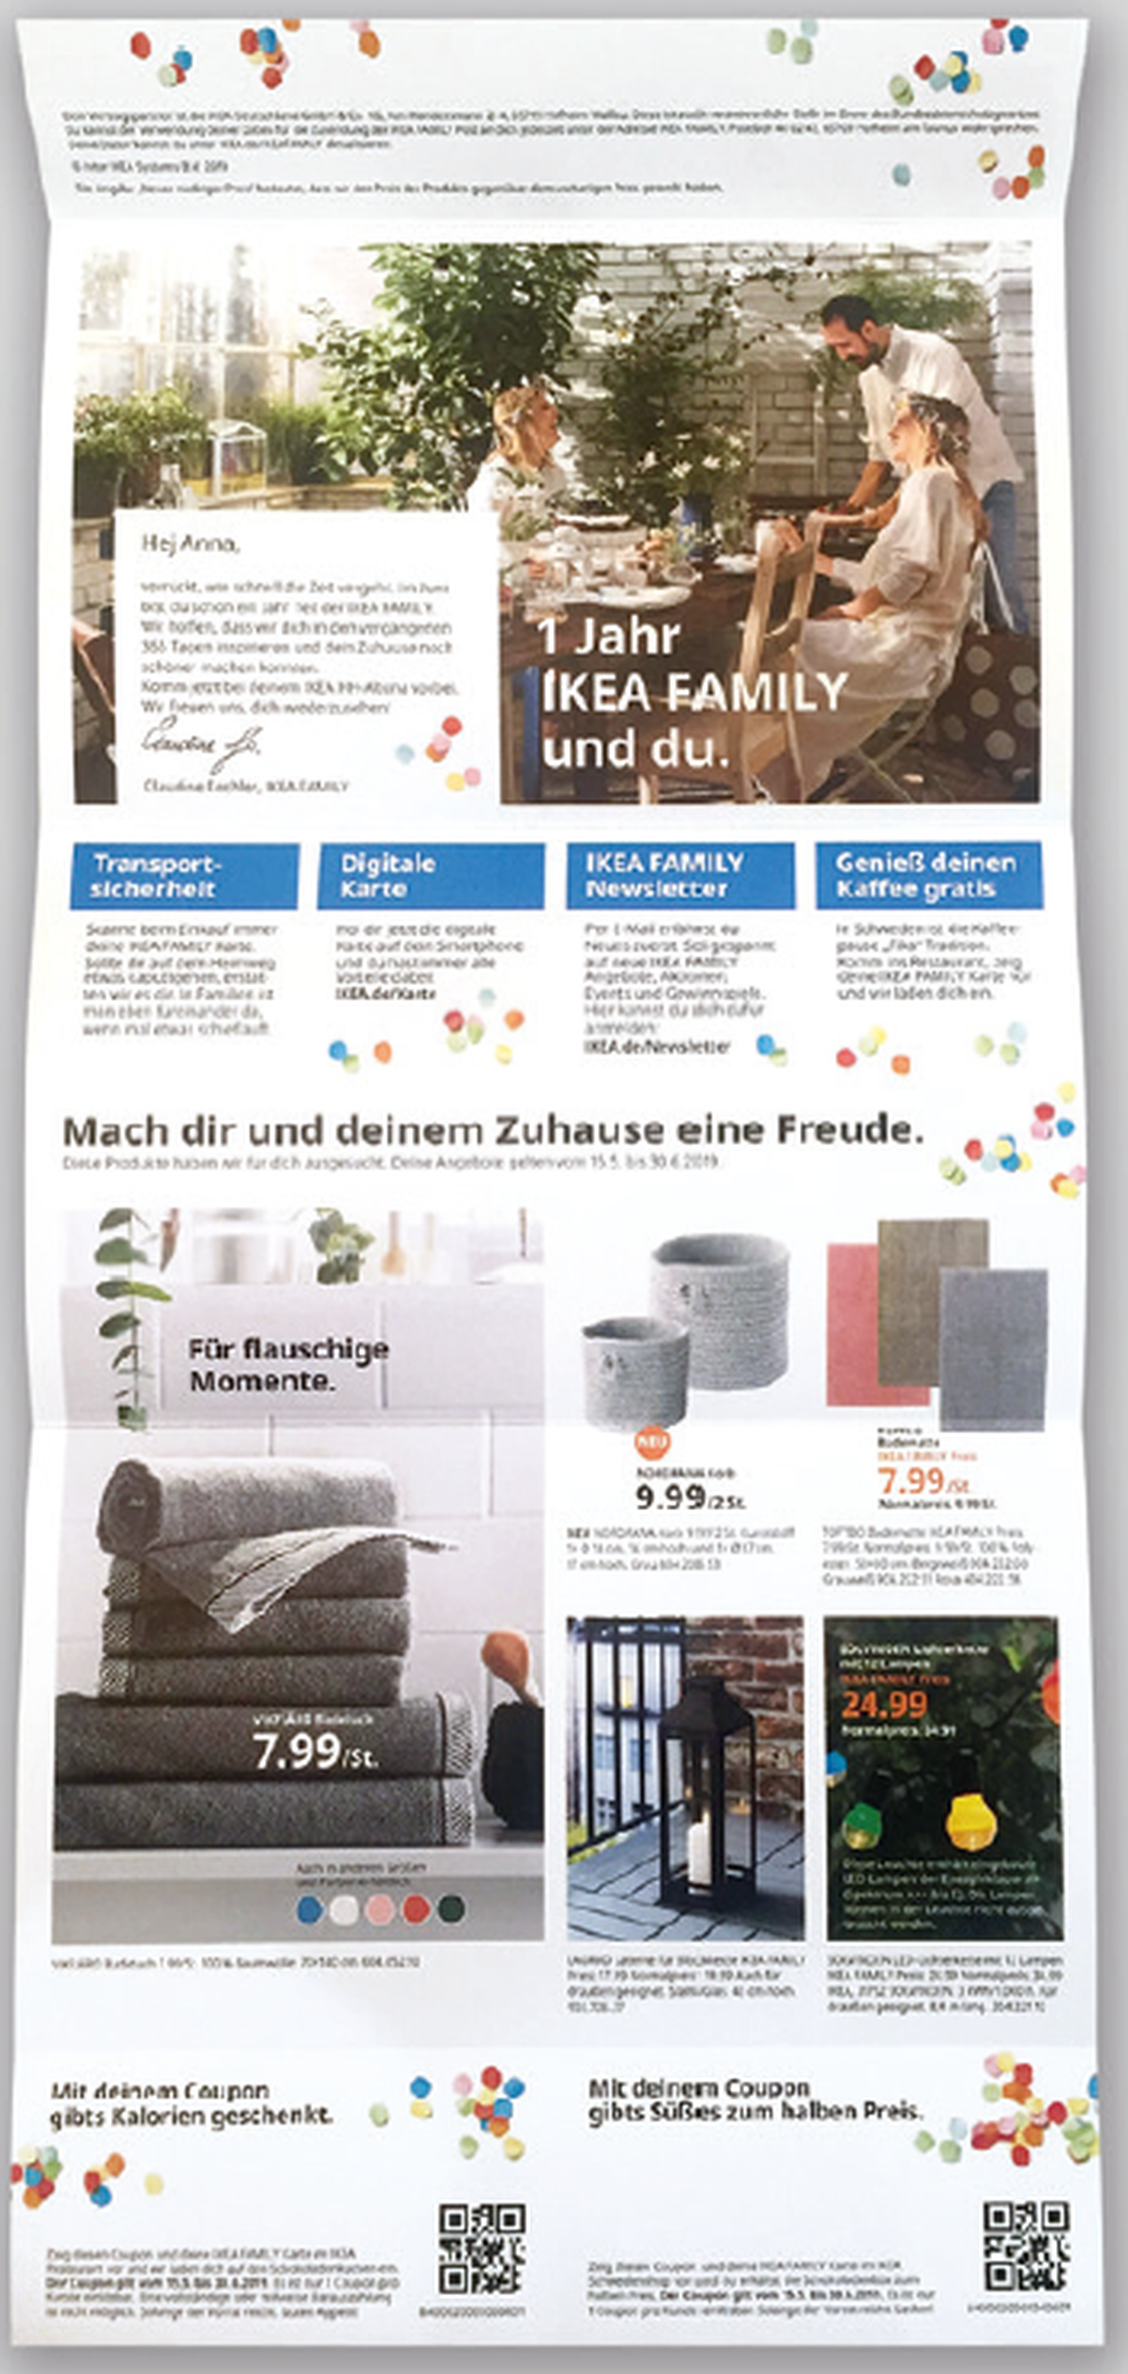 Das Ikea-Printmailing zum Jubiläum. (Bild: HighText Verlag)